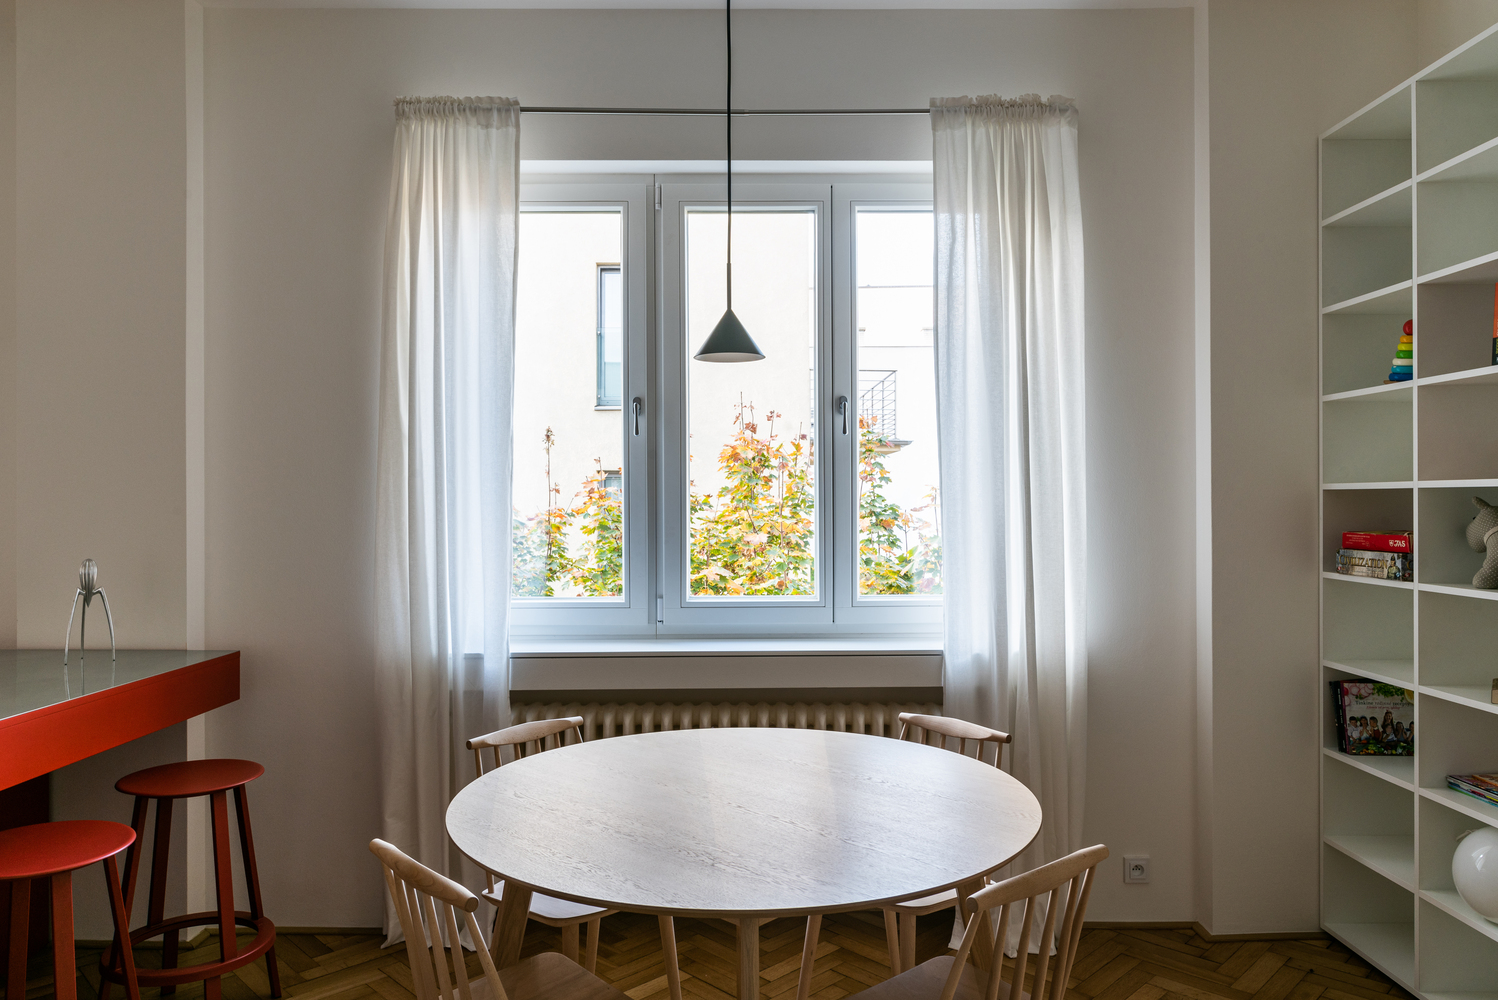 Bộ bàn ăn được bố trí ở cạnh vị trí cửa sổ để có thể tận hưởng tối đa nguồn ánh sáng tự nhiên, kết hợp với rèm che màu trắng mỏng nhẹ và chiếc đèn thả trần đồng bộ với quầy bar mini.